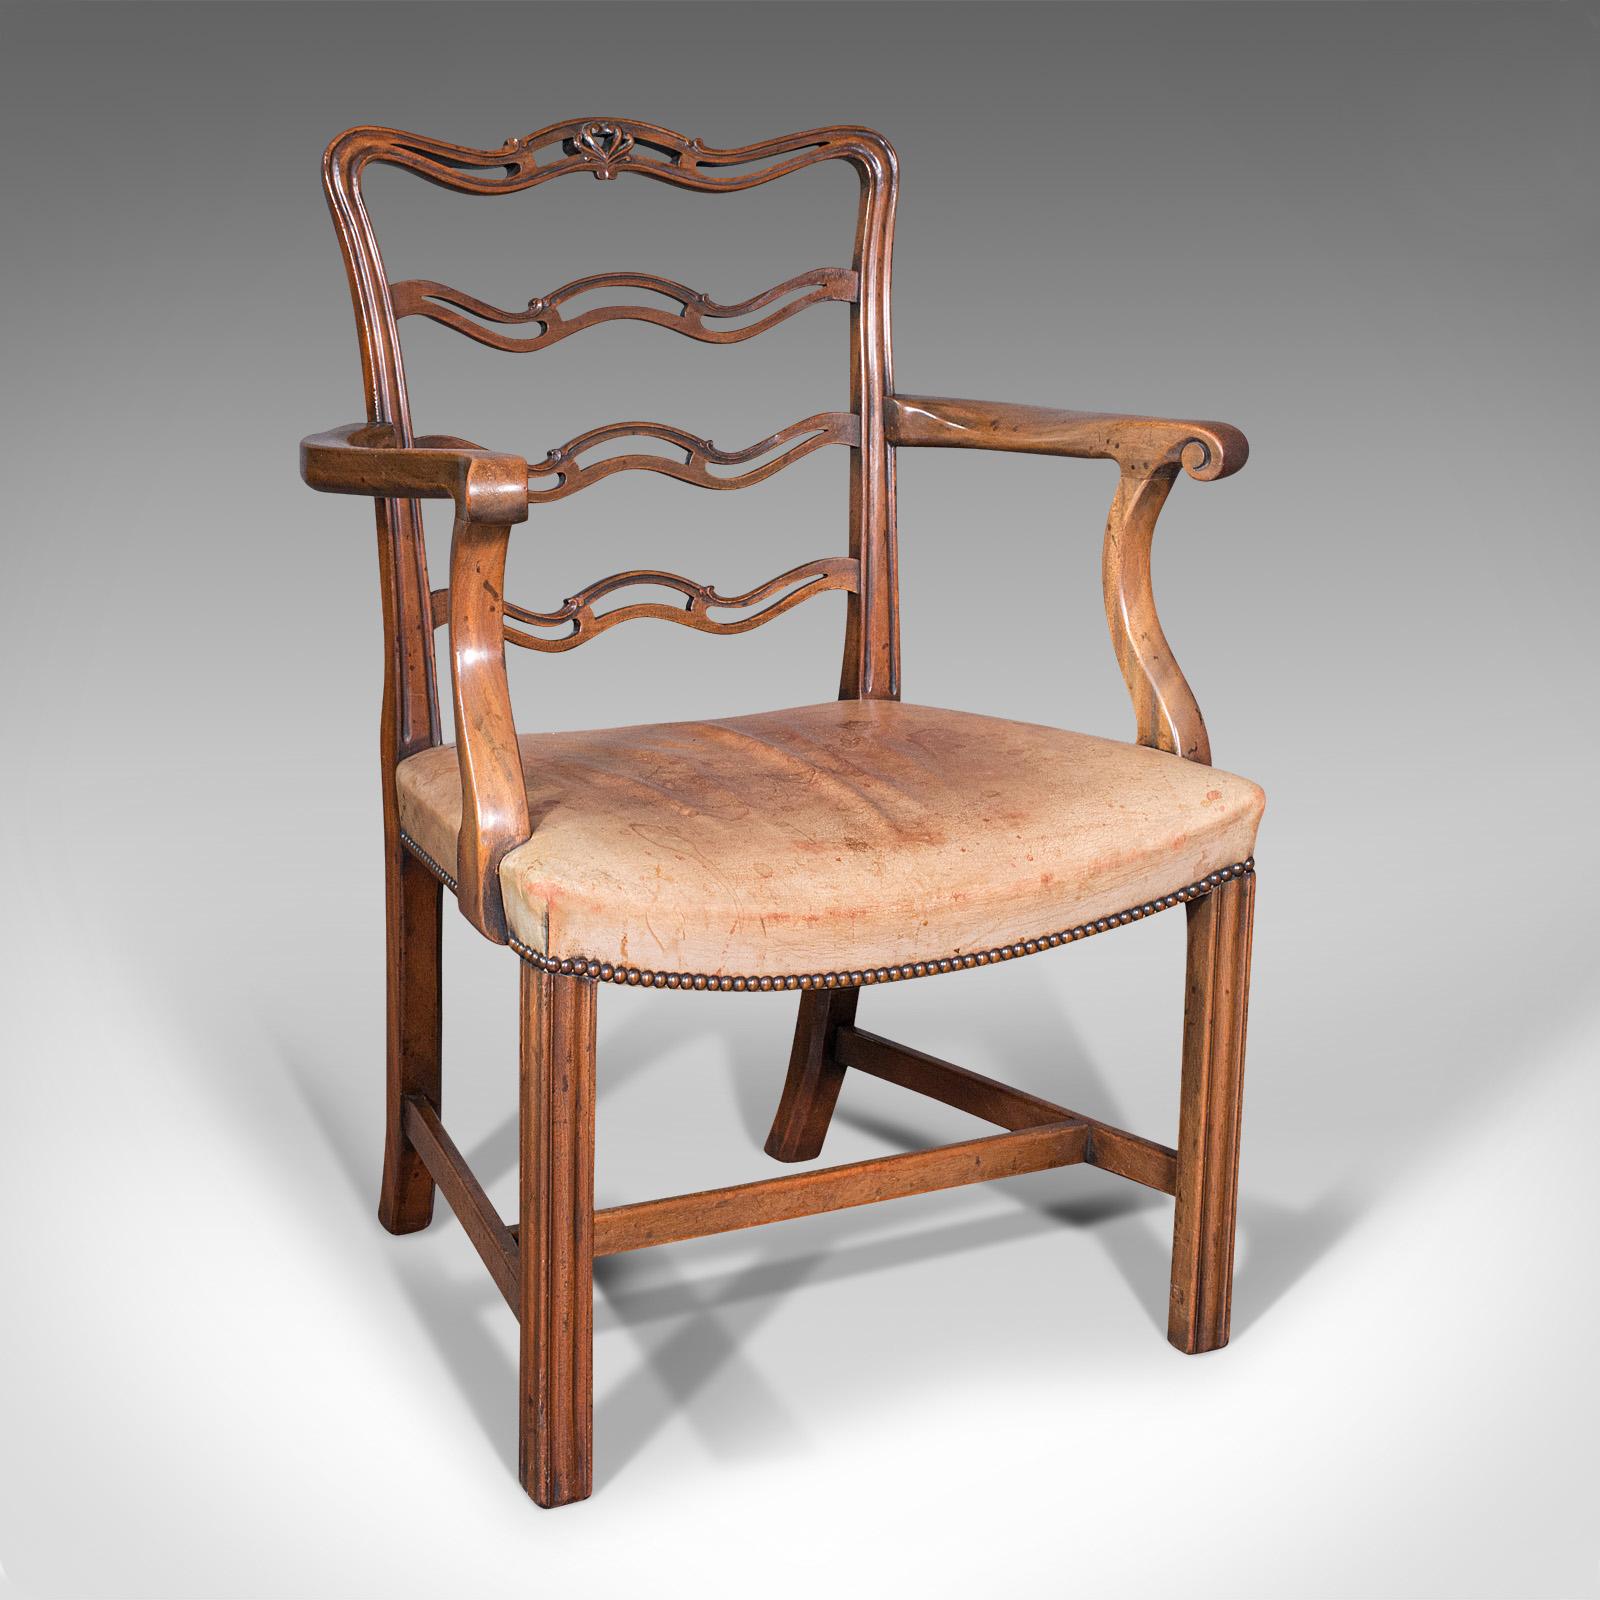 Il s'agit d'un ensemble de quatre chaises vintage à dossier échelonné. Un sculpteur et un siège irlandais en acajou, datant de la période Art Déco, vers 1940.

Resplendissant dans le goût du renouveau irlandais Chippendale
Profil généreusement